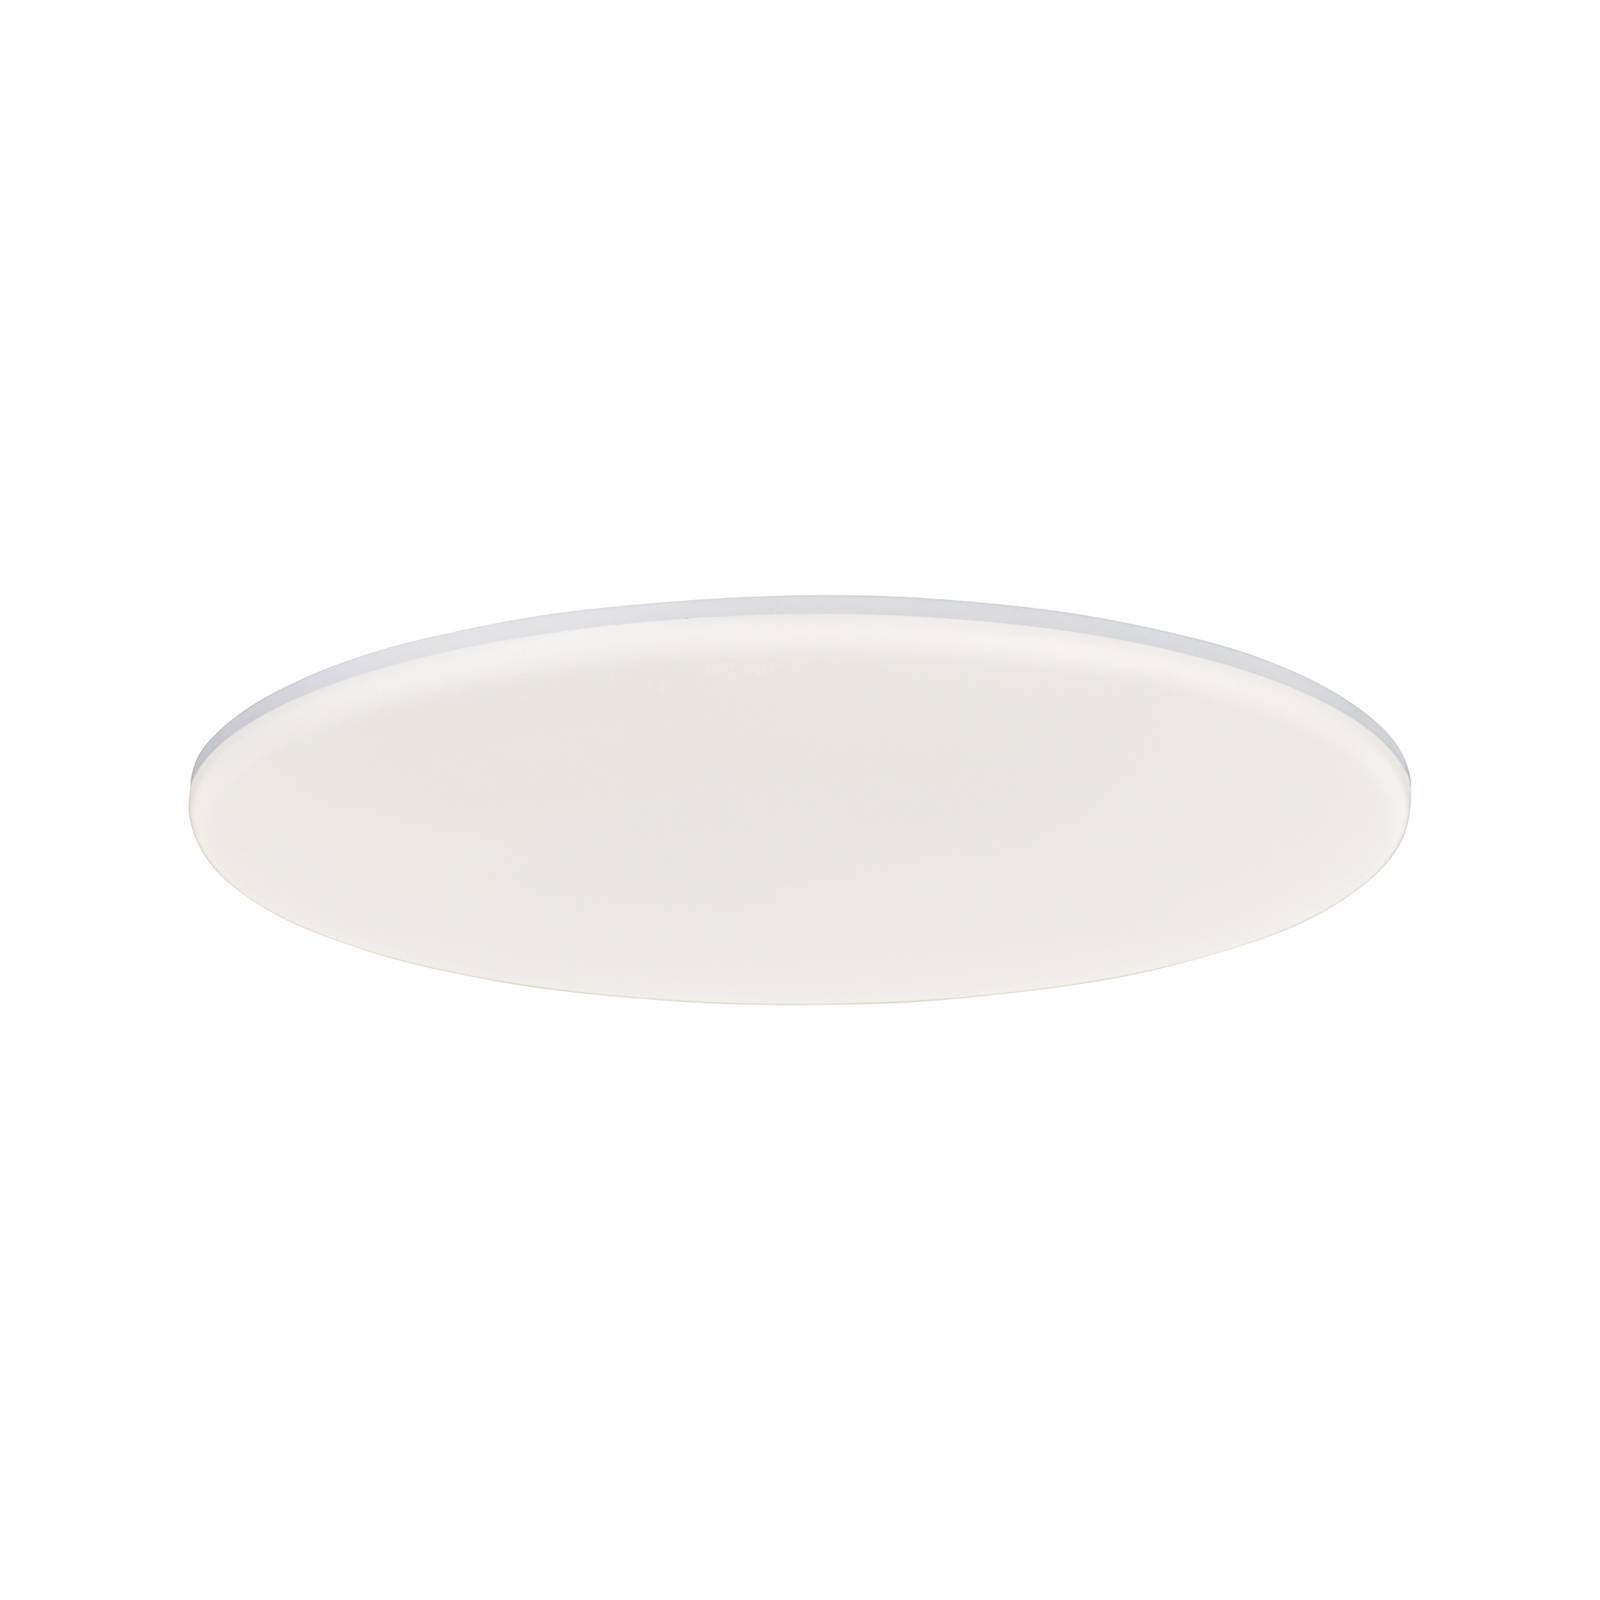 Image of Brilliant Colden Plafoniera LED per il bagno, bianca, on/off, Ø 45 cm